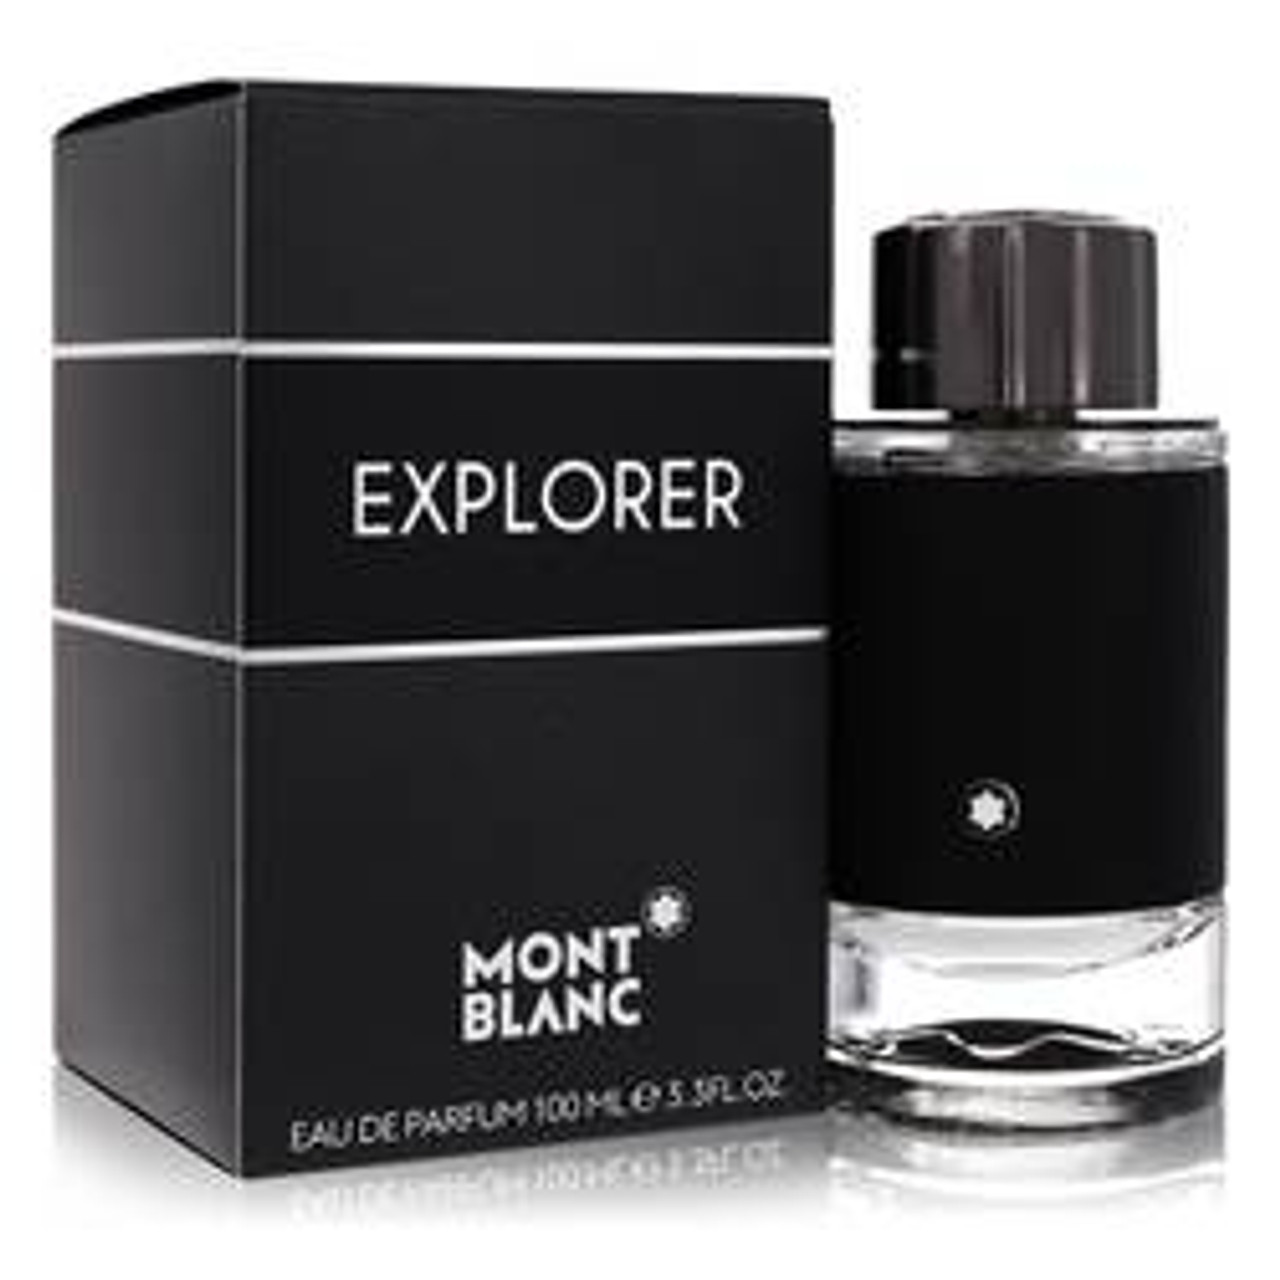 Montblanc Explorer Cologne By Mont Blanc Eau De Parfum Spray 3.4 oz for Men - *Pre-Order